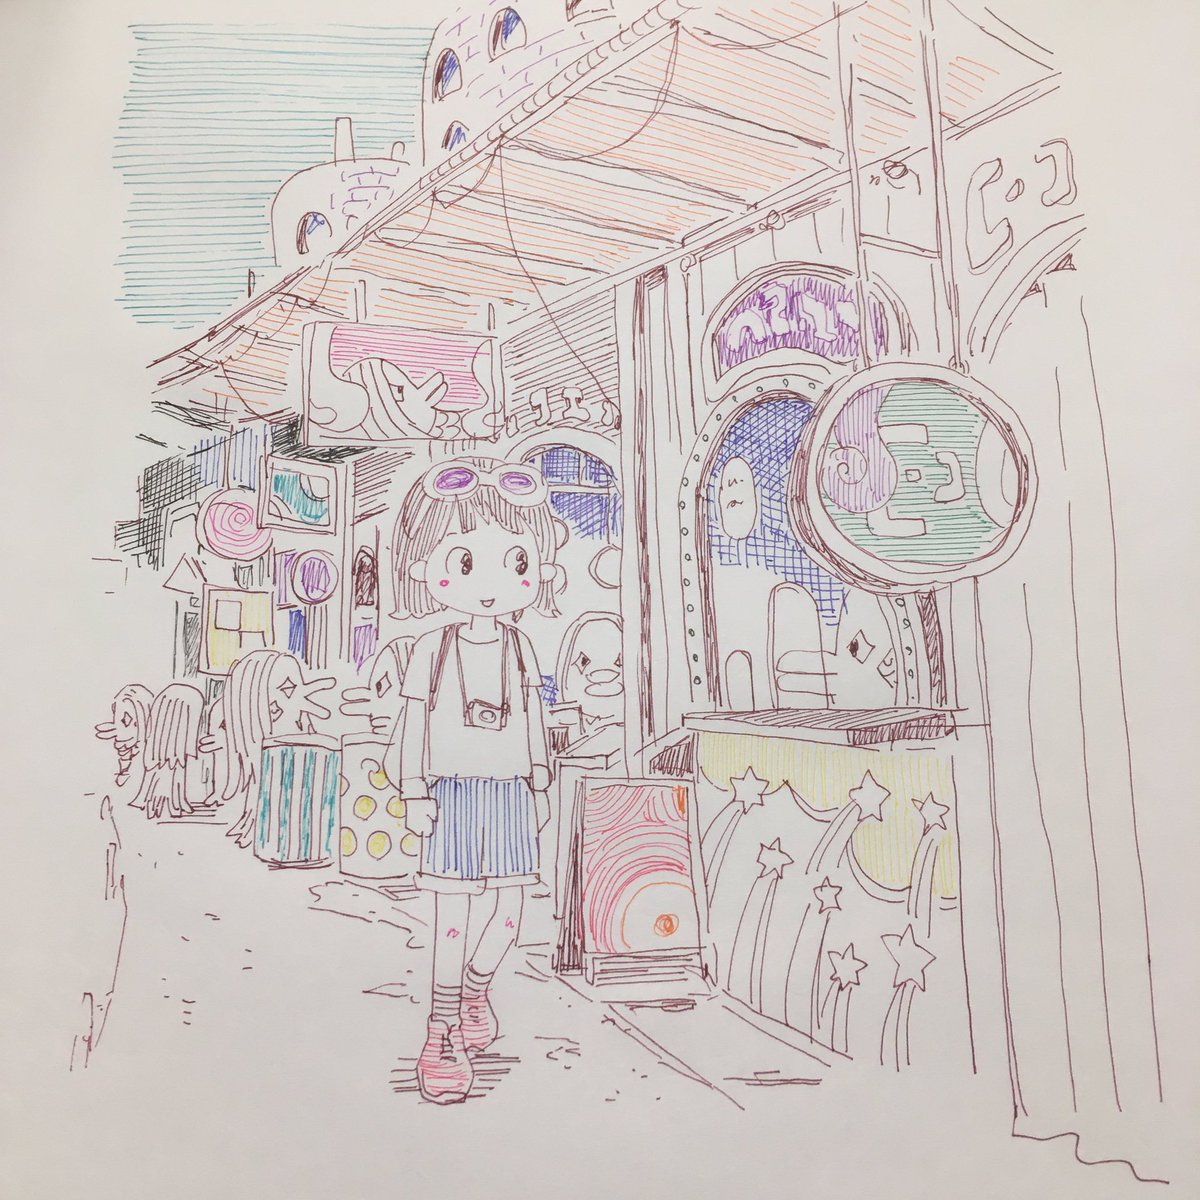 「#アマビエ の街に行く
#ハイテックC10色使い 」|青木俊直:Toshinao Aokiのイラスト